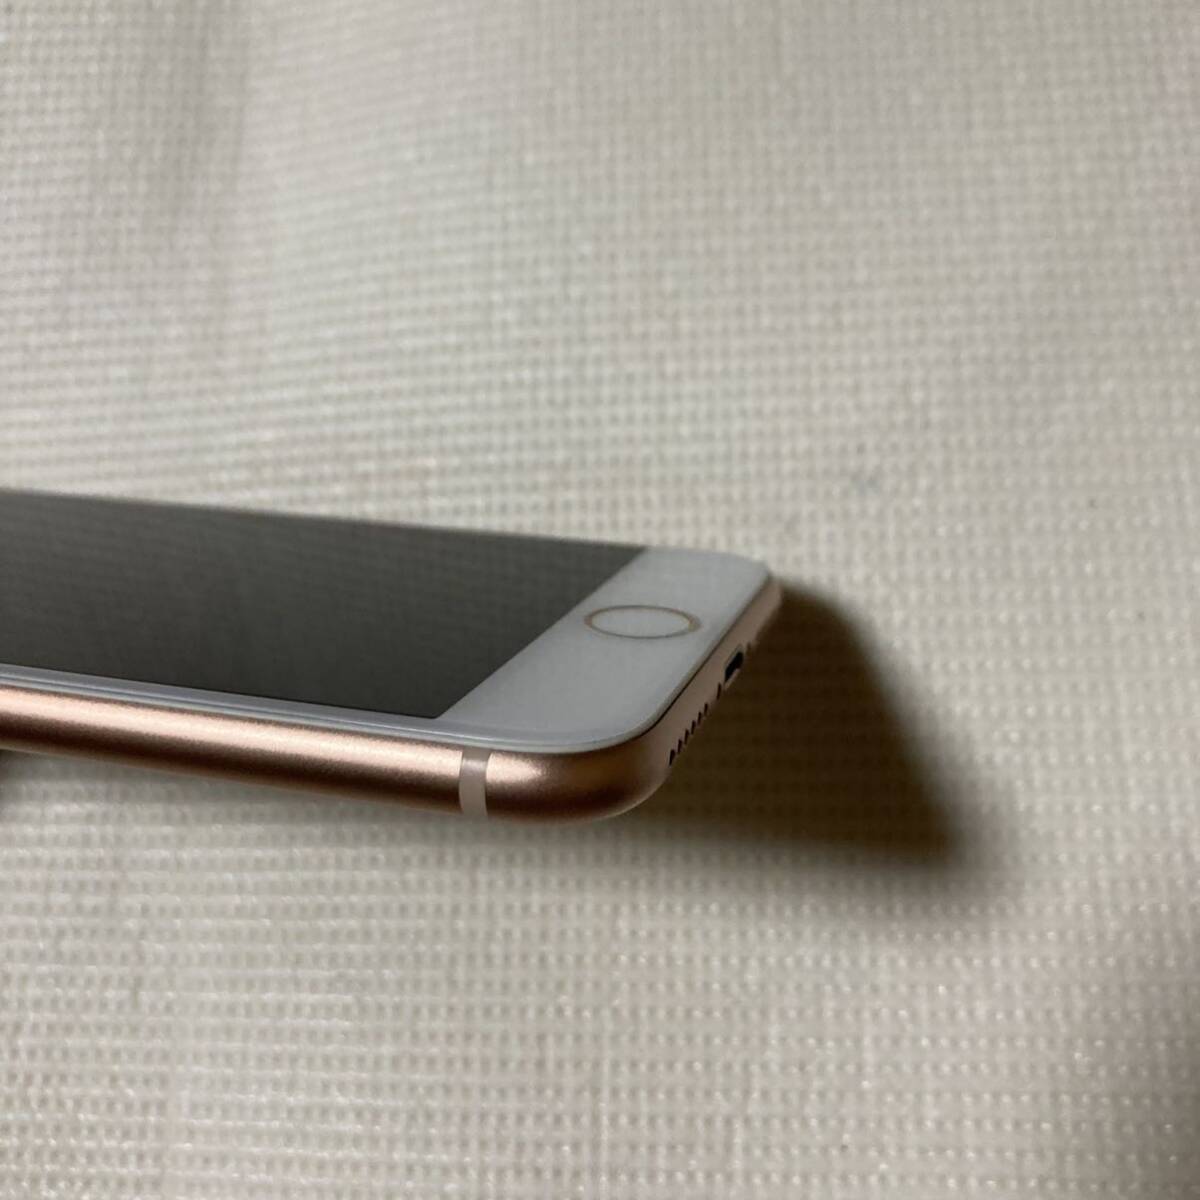 送料無料 美品 SIMフリー iPhone8 64GB ゴールド バッテリー最大容量100% SIMロック解除済_画像4